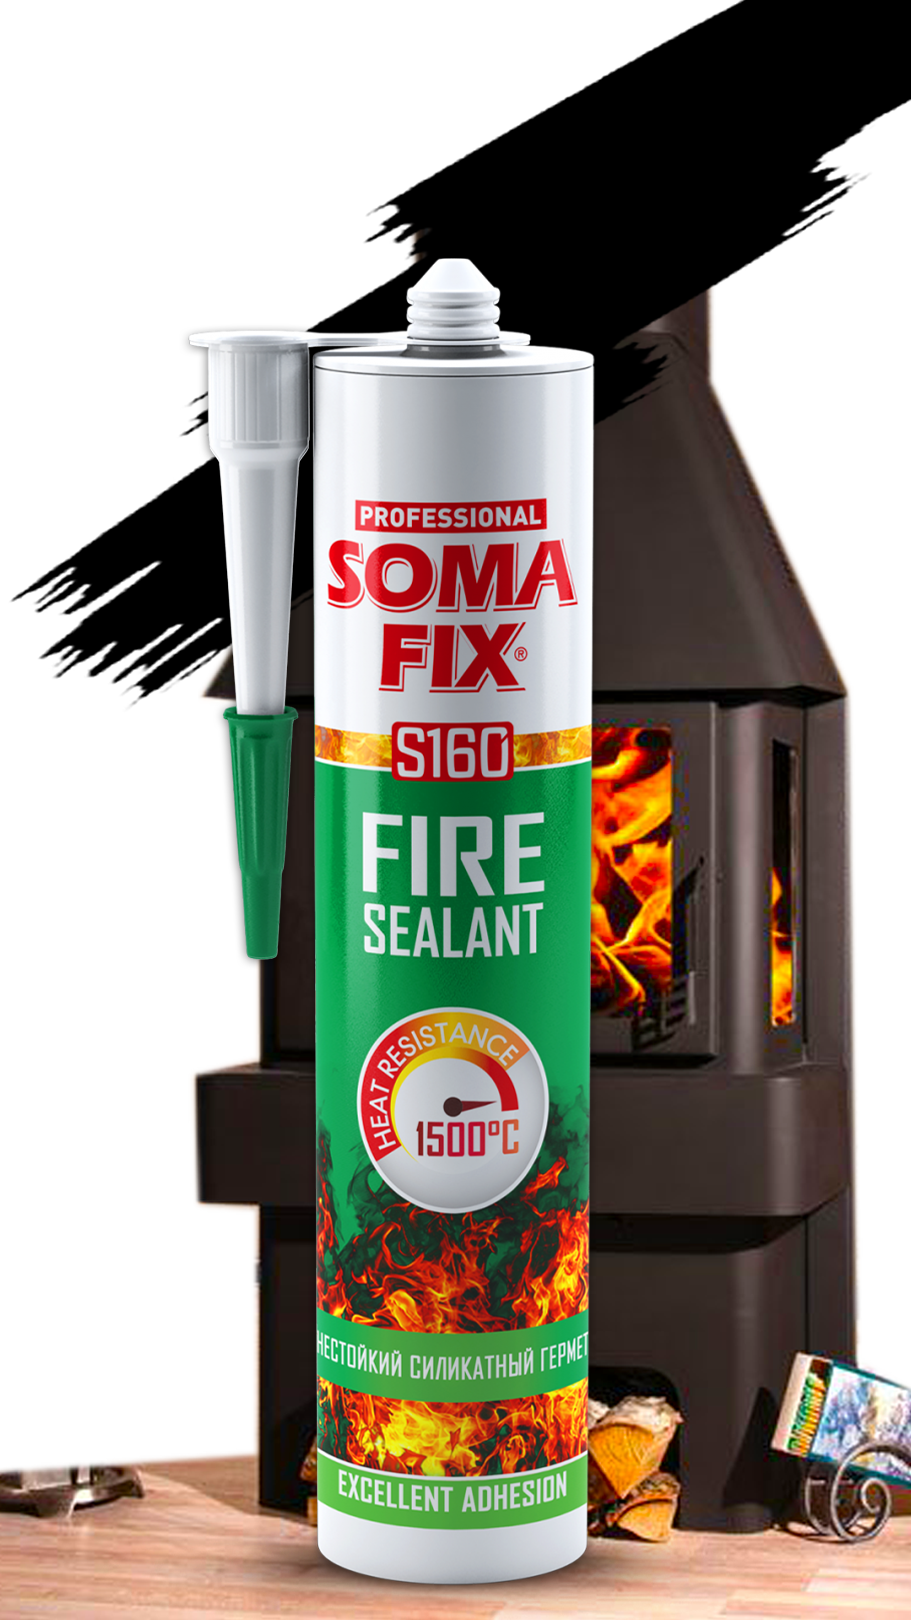 Герметик SOMA FIX огнестойкий силикатный (чёрный) 310 мл., температура применения до 1500 °C S160. Купить от производителя по отличной цене